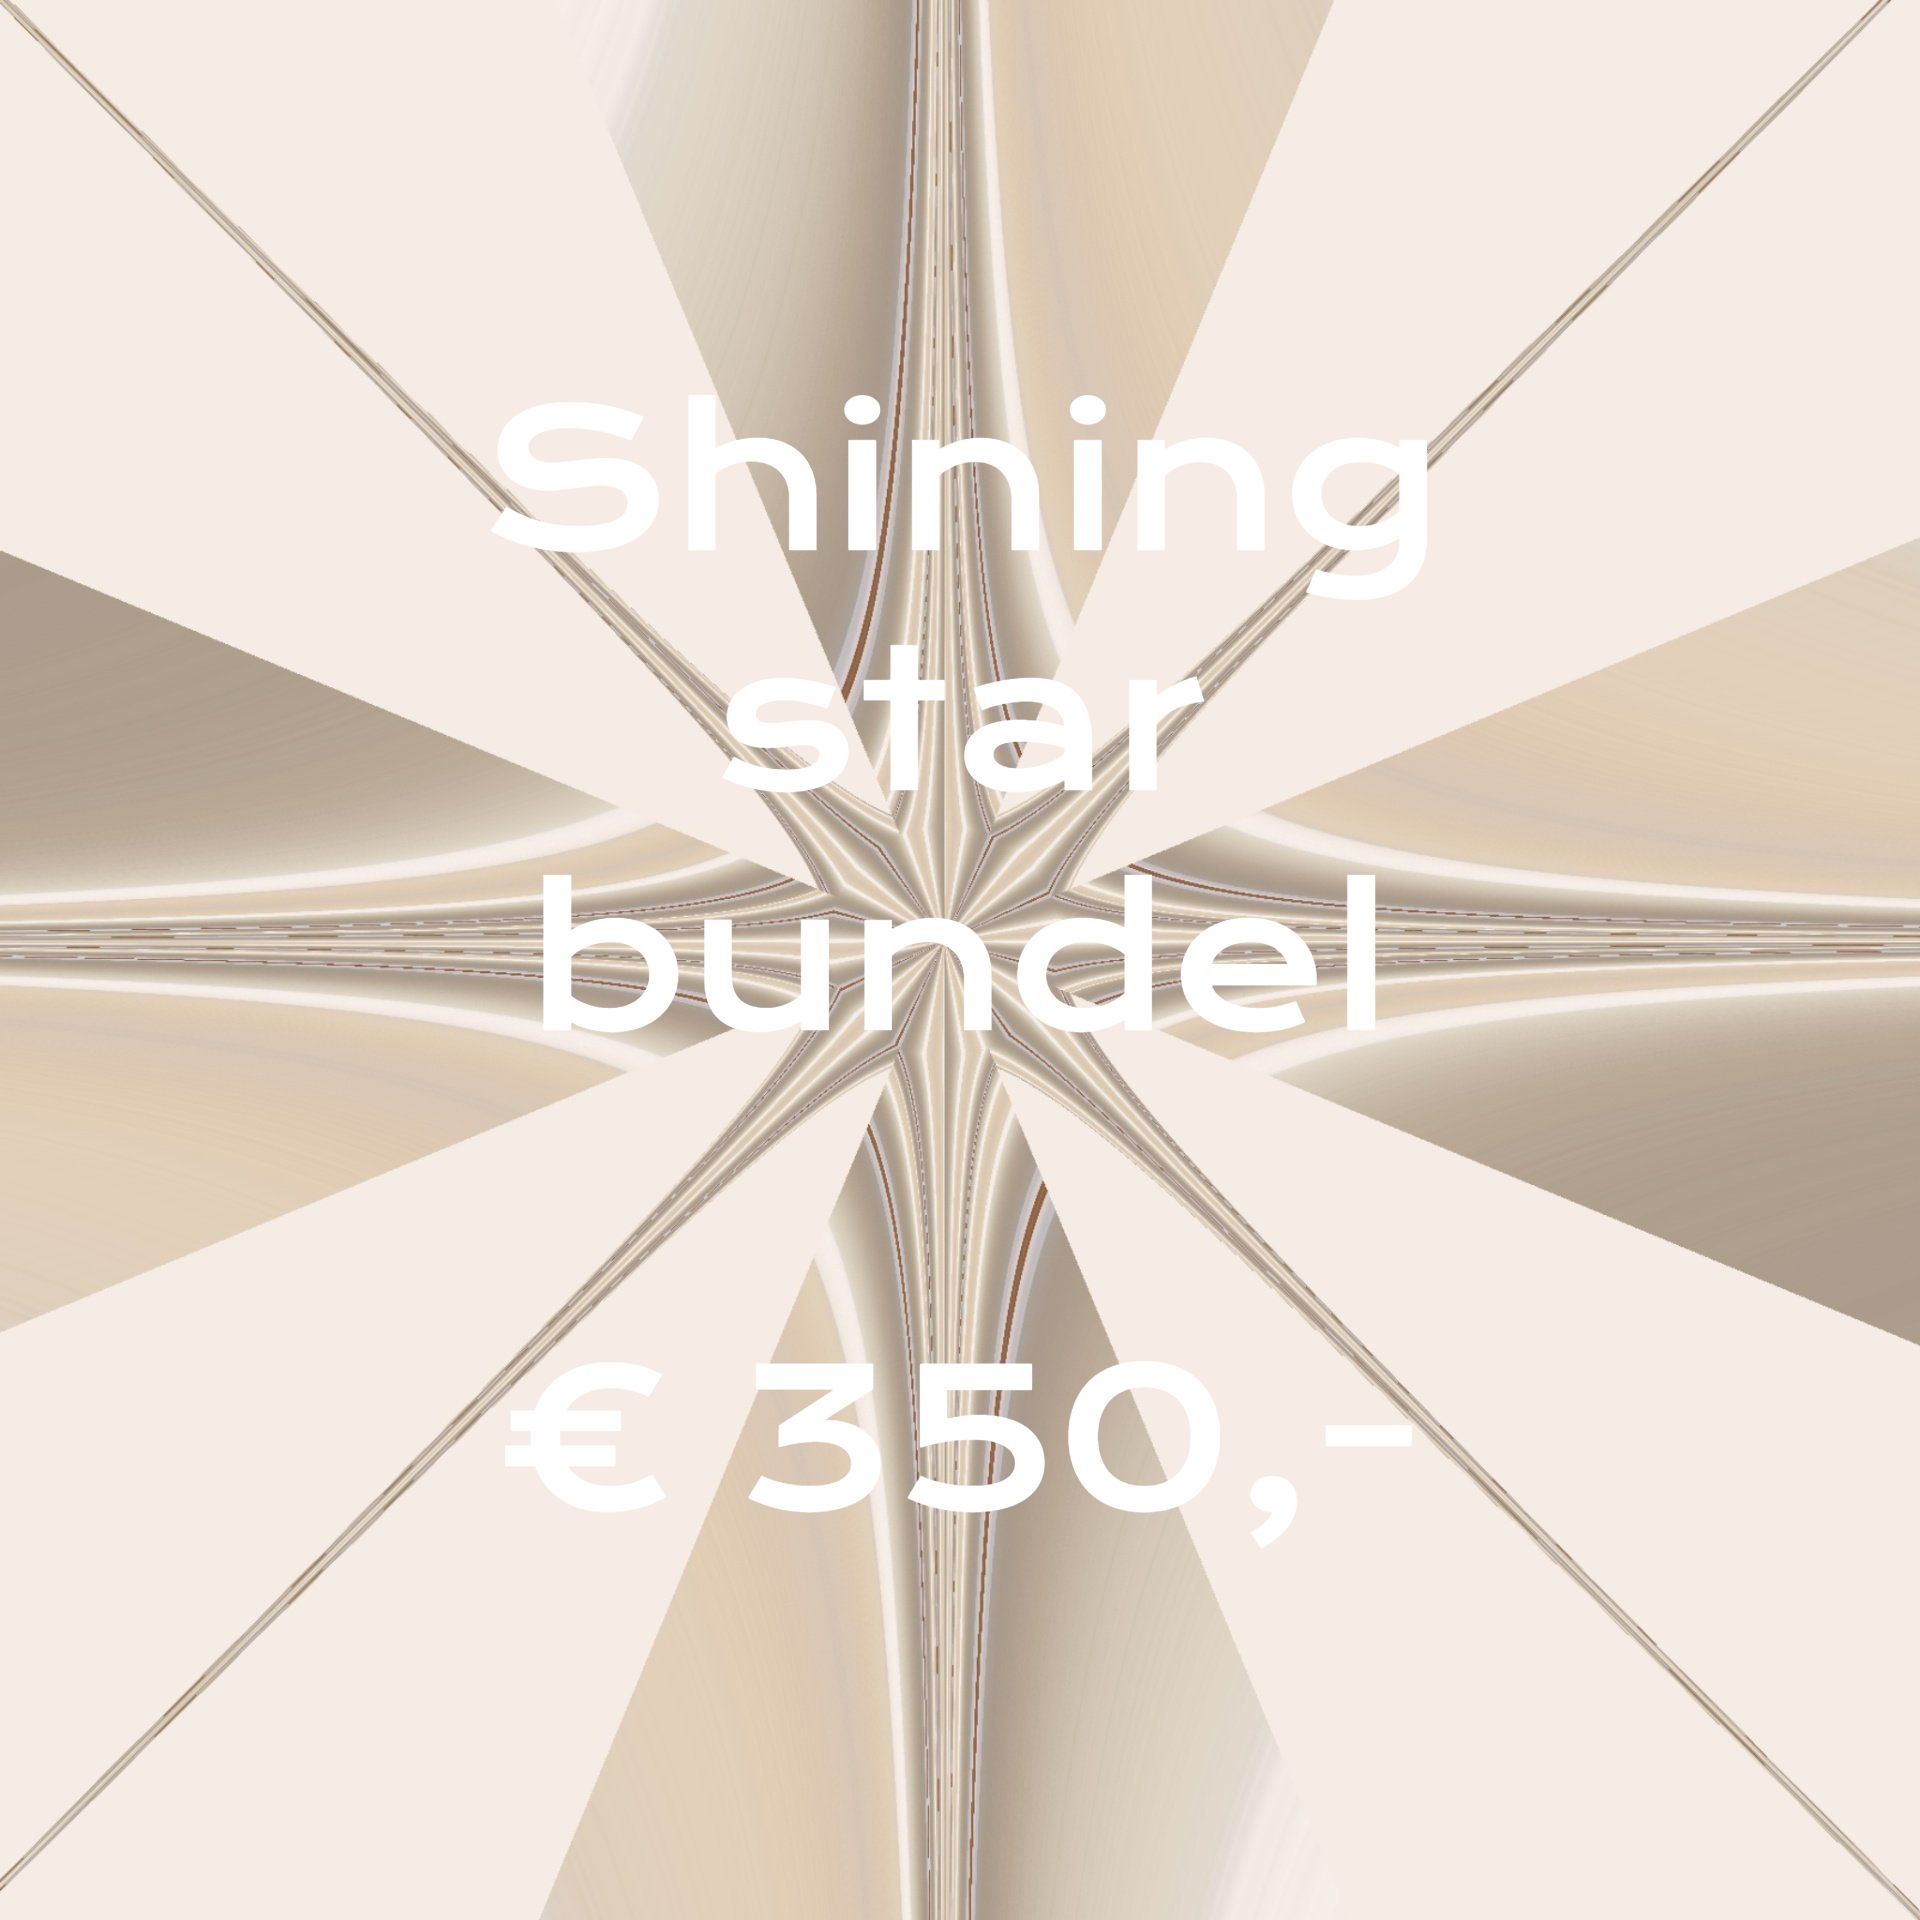 Een poster met de tekst Shining Star Bundel 350 euro